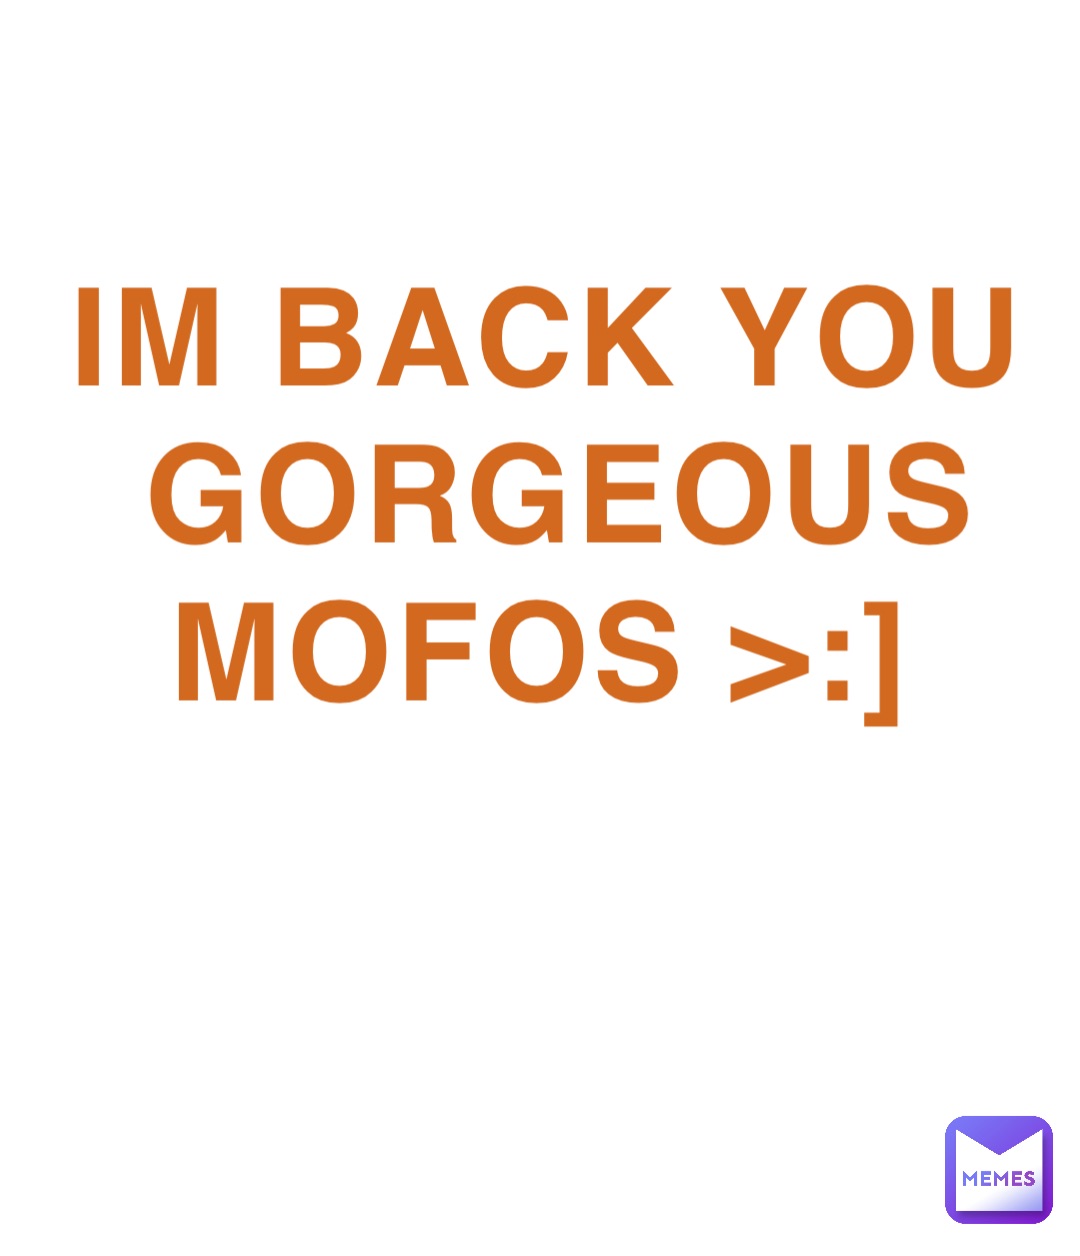 IM BACK YOU GORGEOUS MOFOS >:]